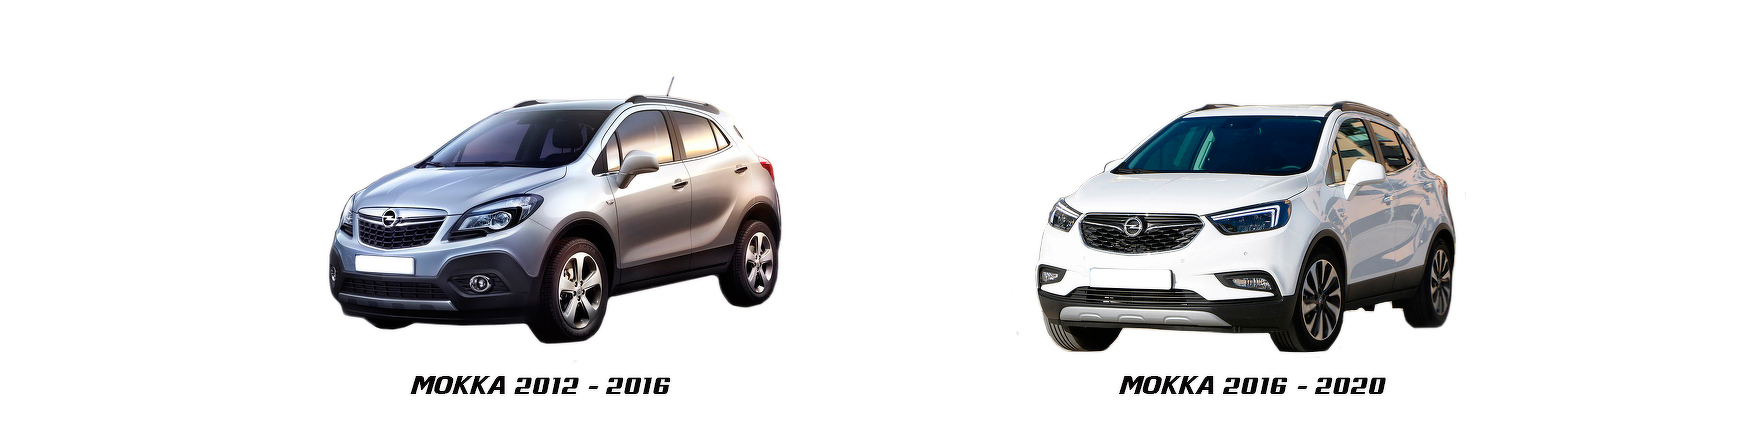 Opel Mokka 2012 2013 2014 2015